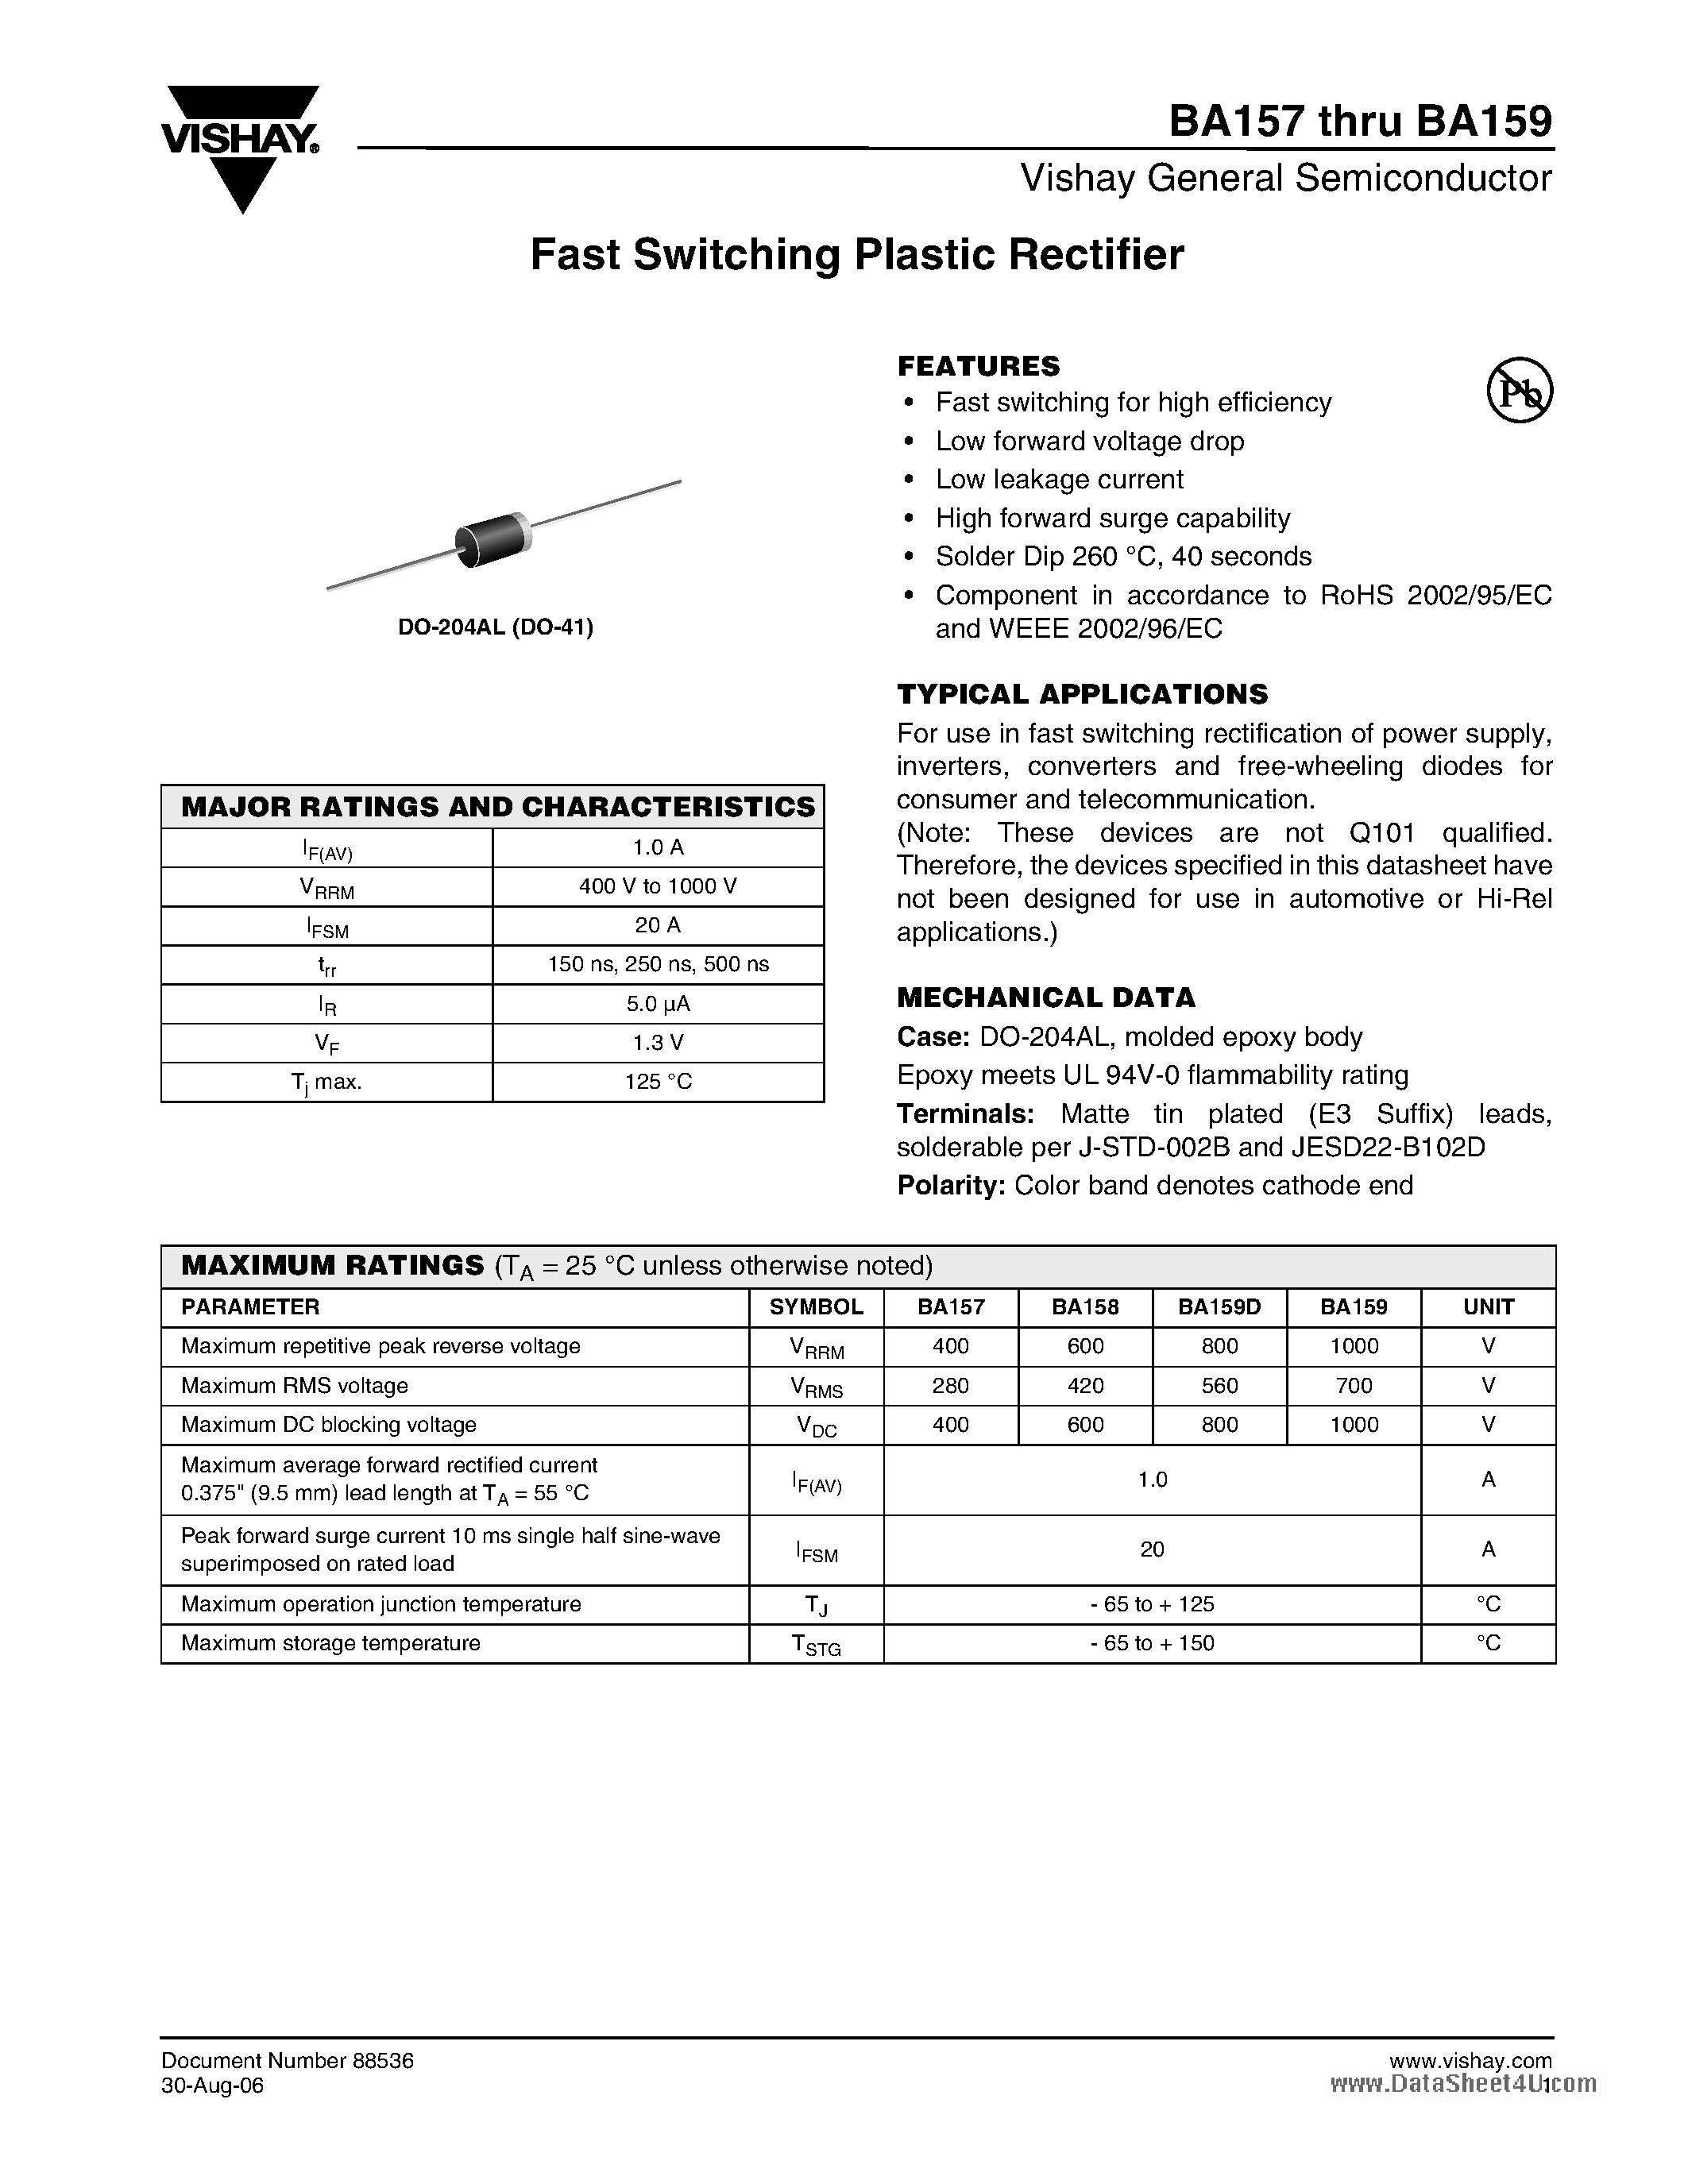 Даташит BA157-(BA157 - BA159) Fast Switching Plastic Rectifier страница 1